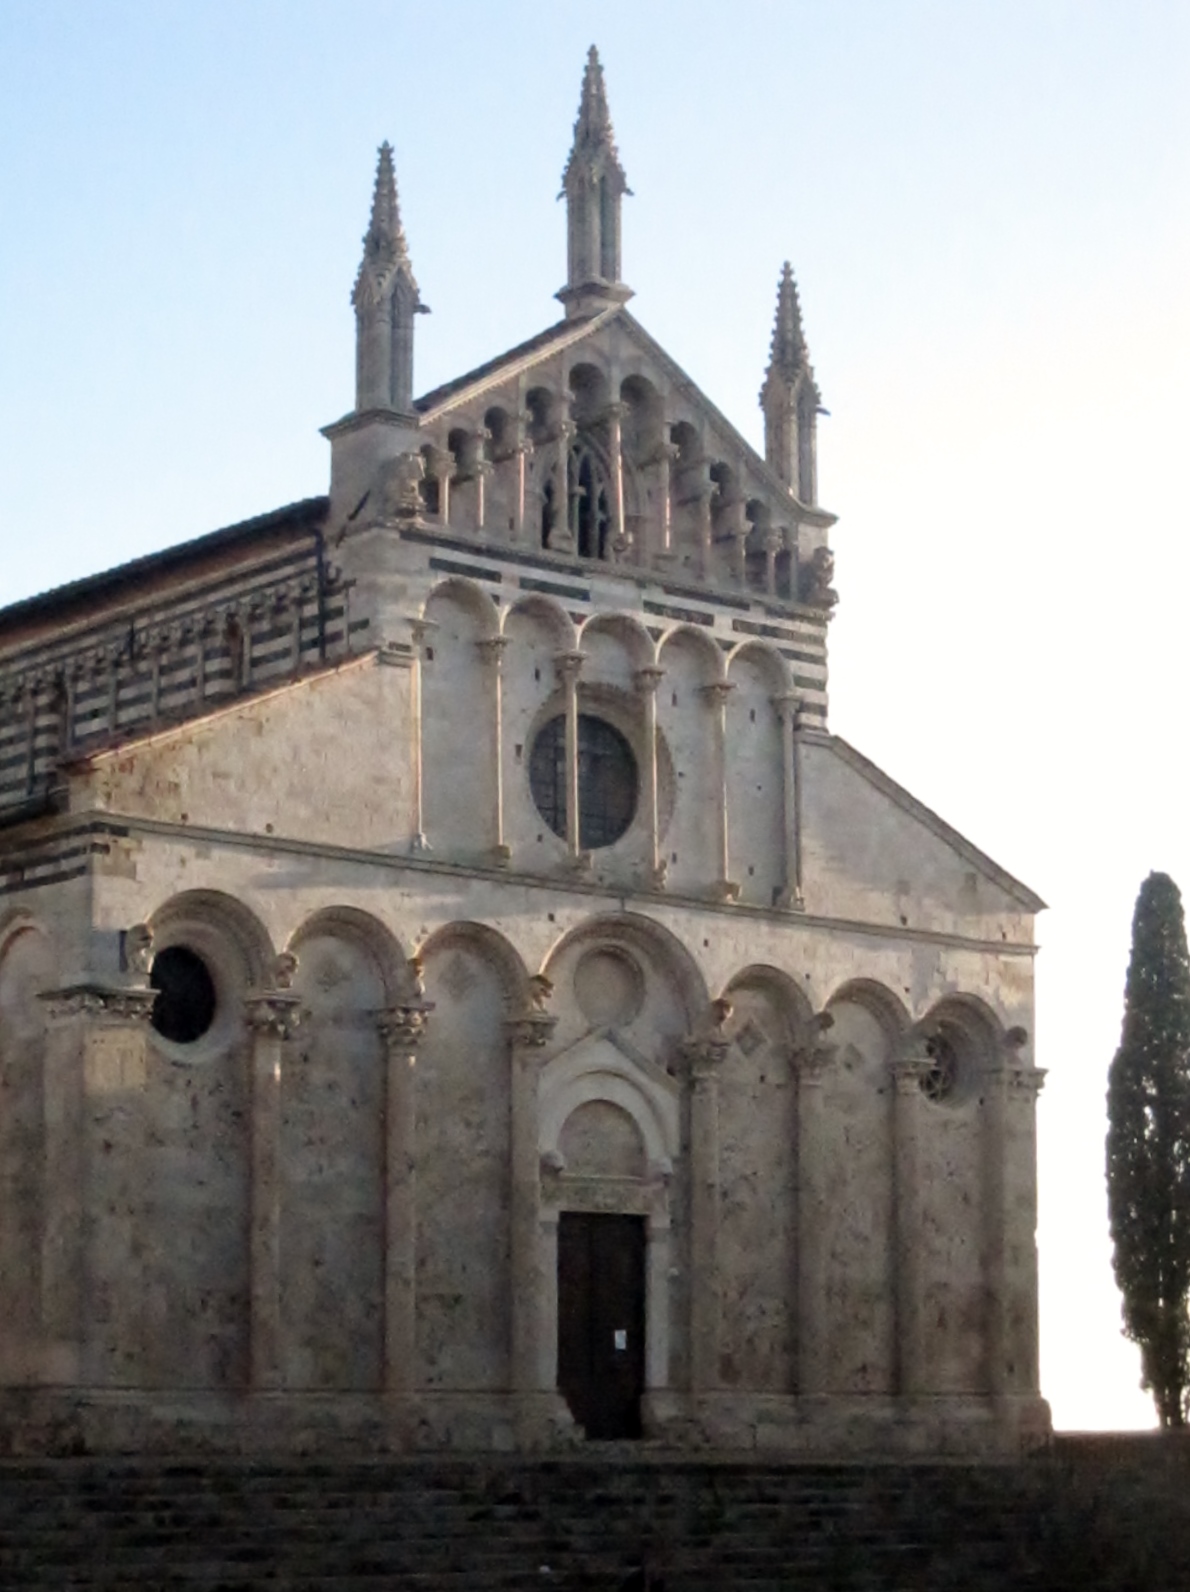 La facciata romanica del Duomo di massa marittima